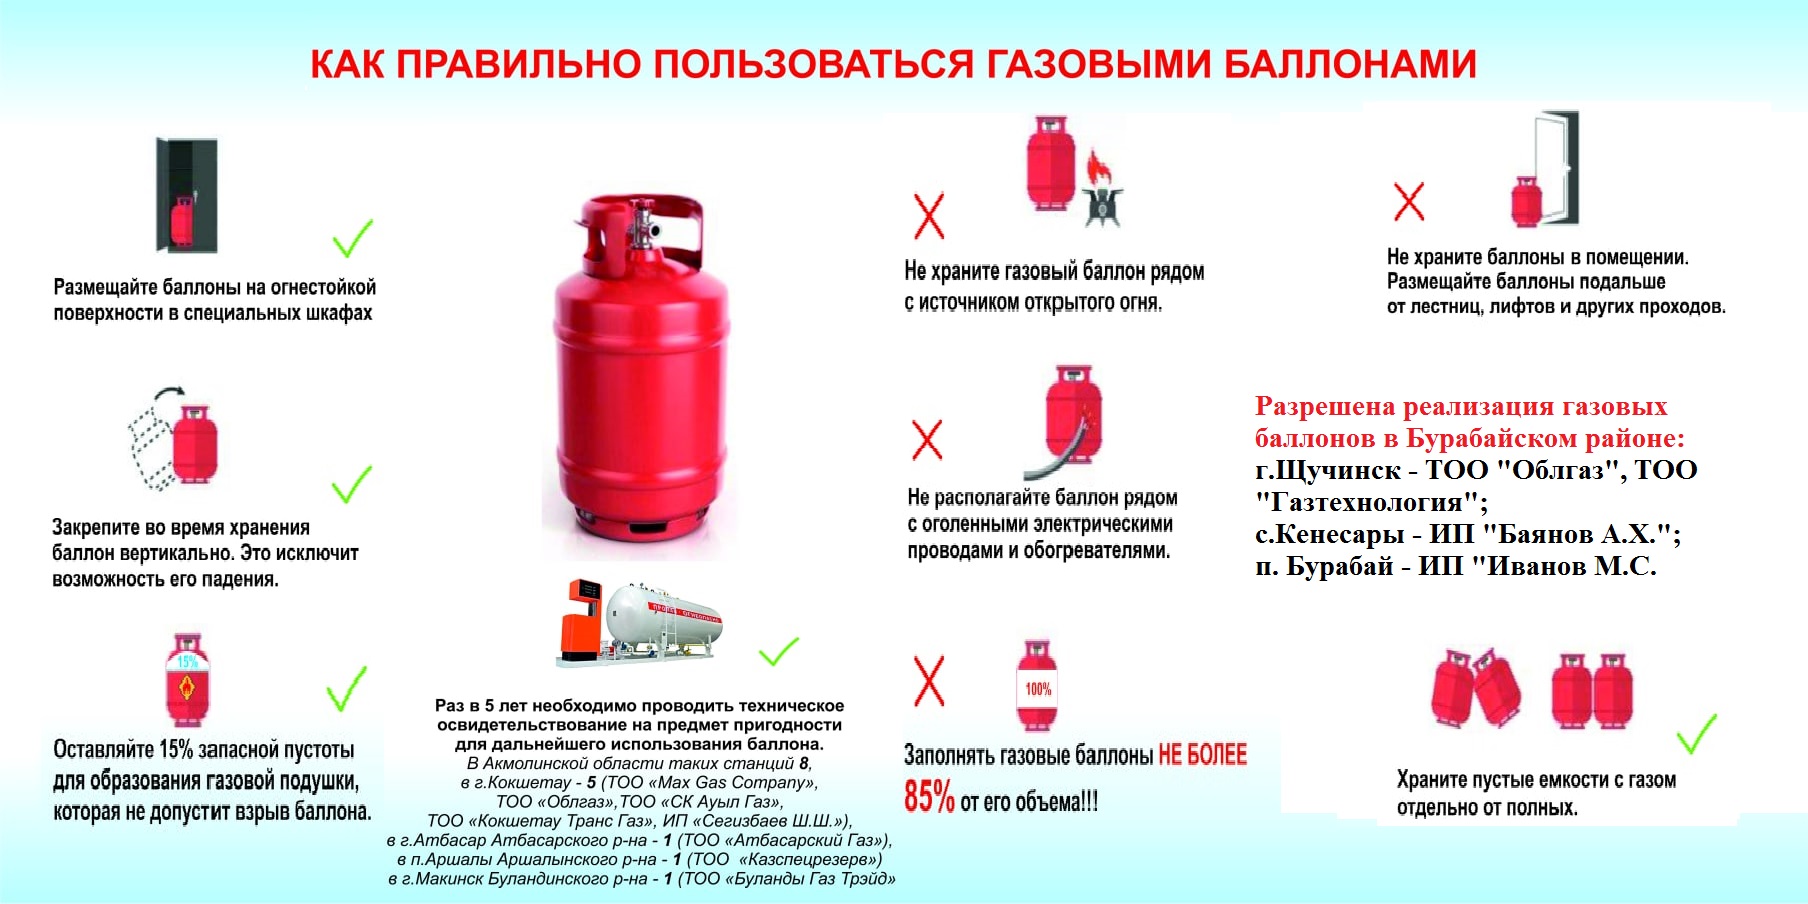 Требования по безопасности объектов систем газоснабжения